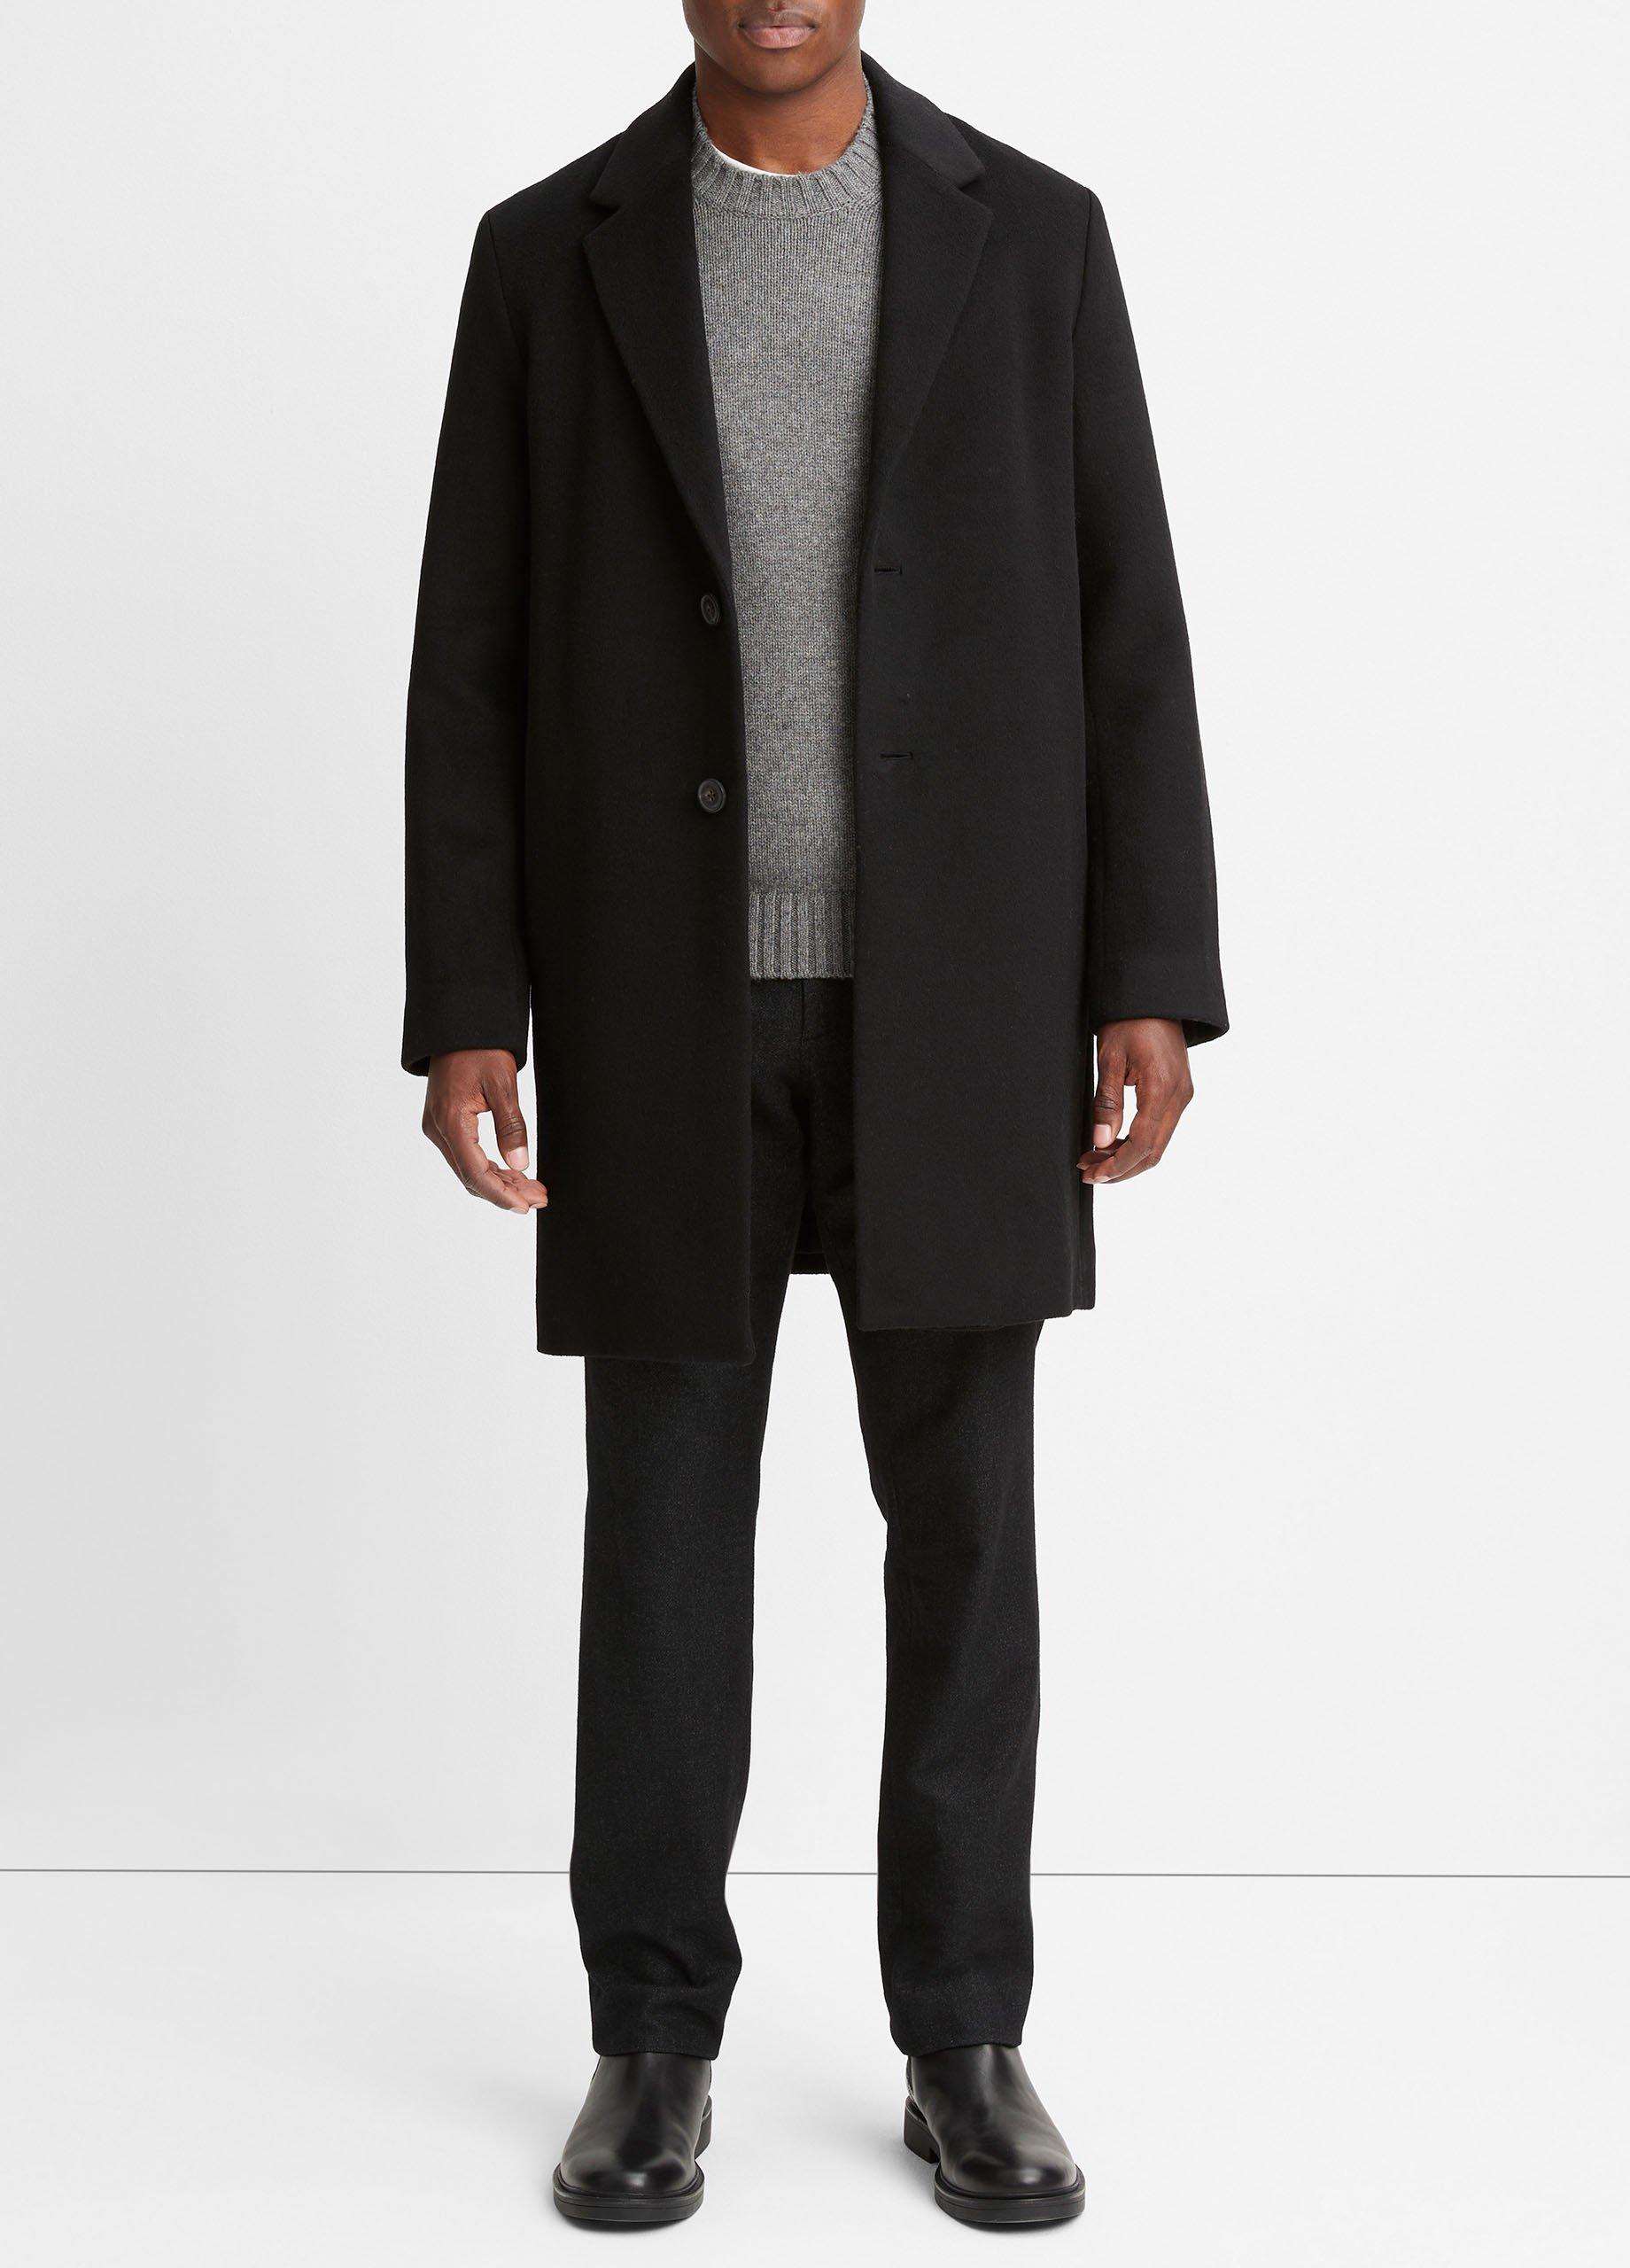 Classic Wool-Blend Coat, Black, Size L Vince